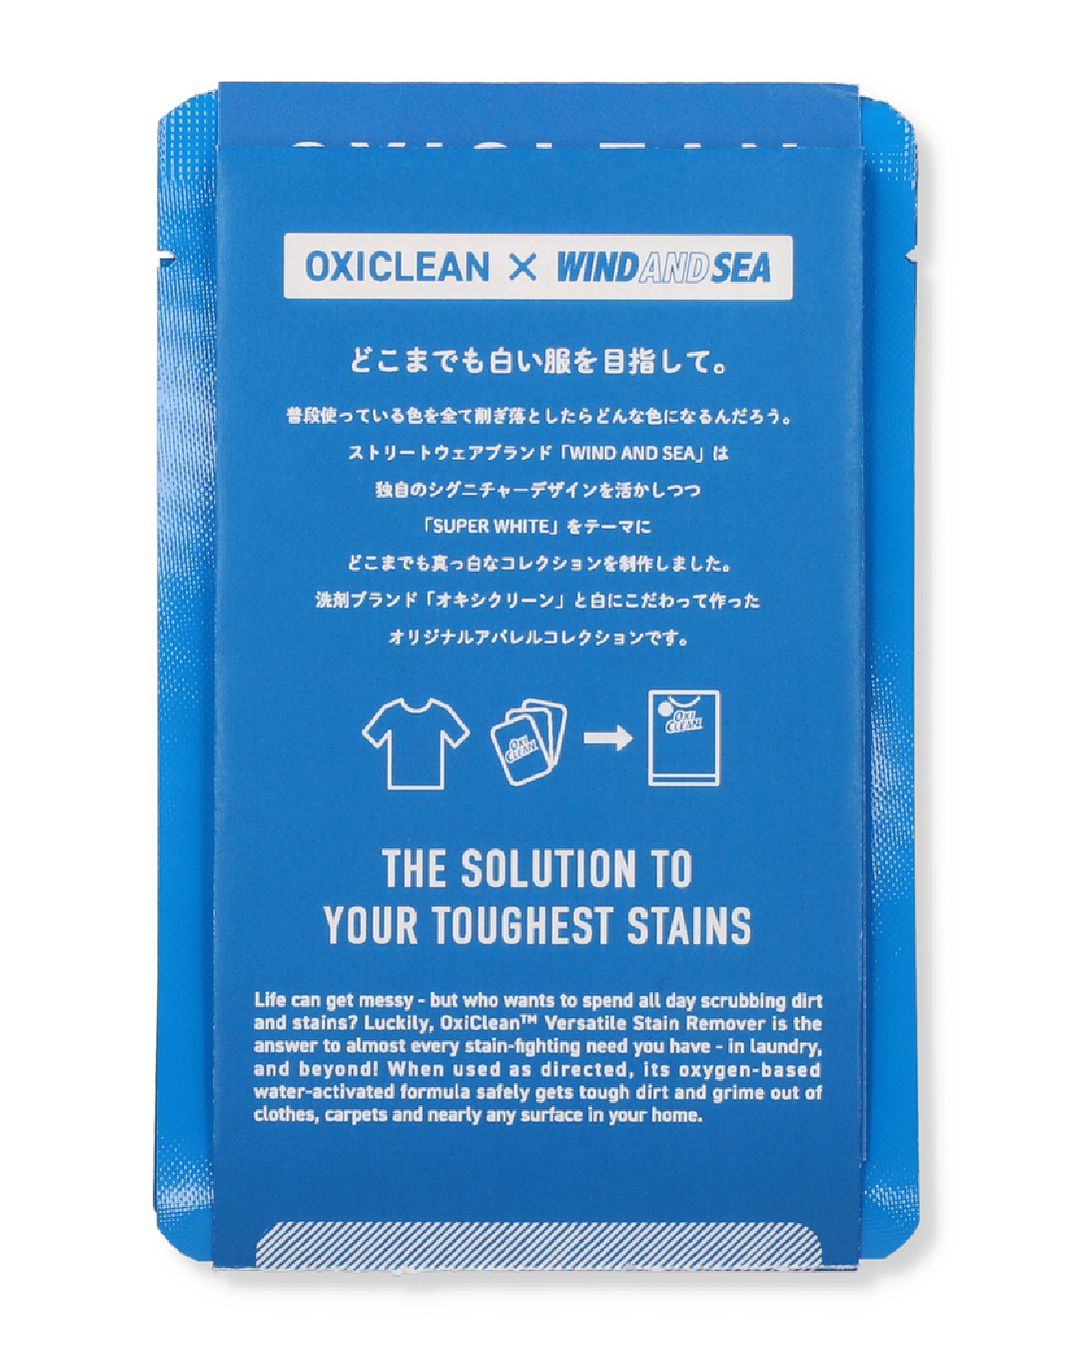 3/9 発売！OXICLEAN × WIND AND SEA 最新コラボレーション (オキシ 